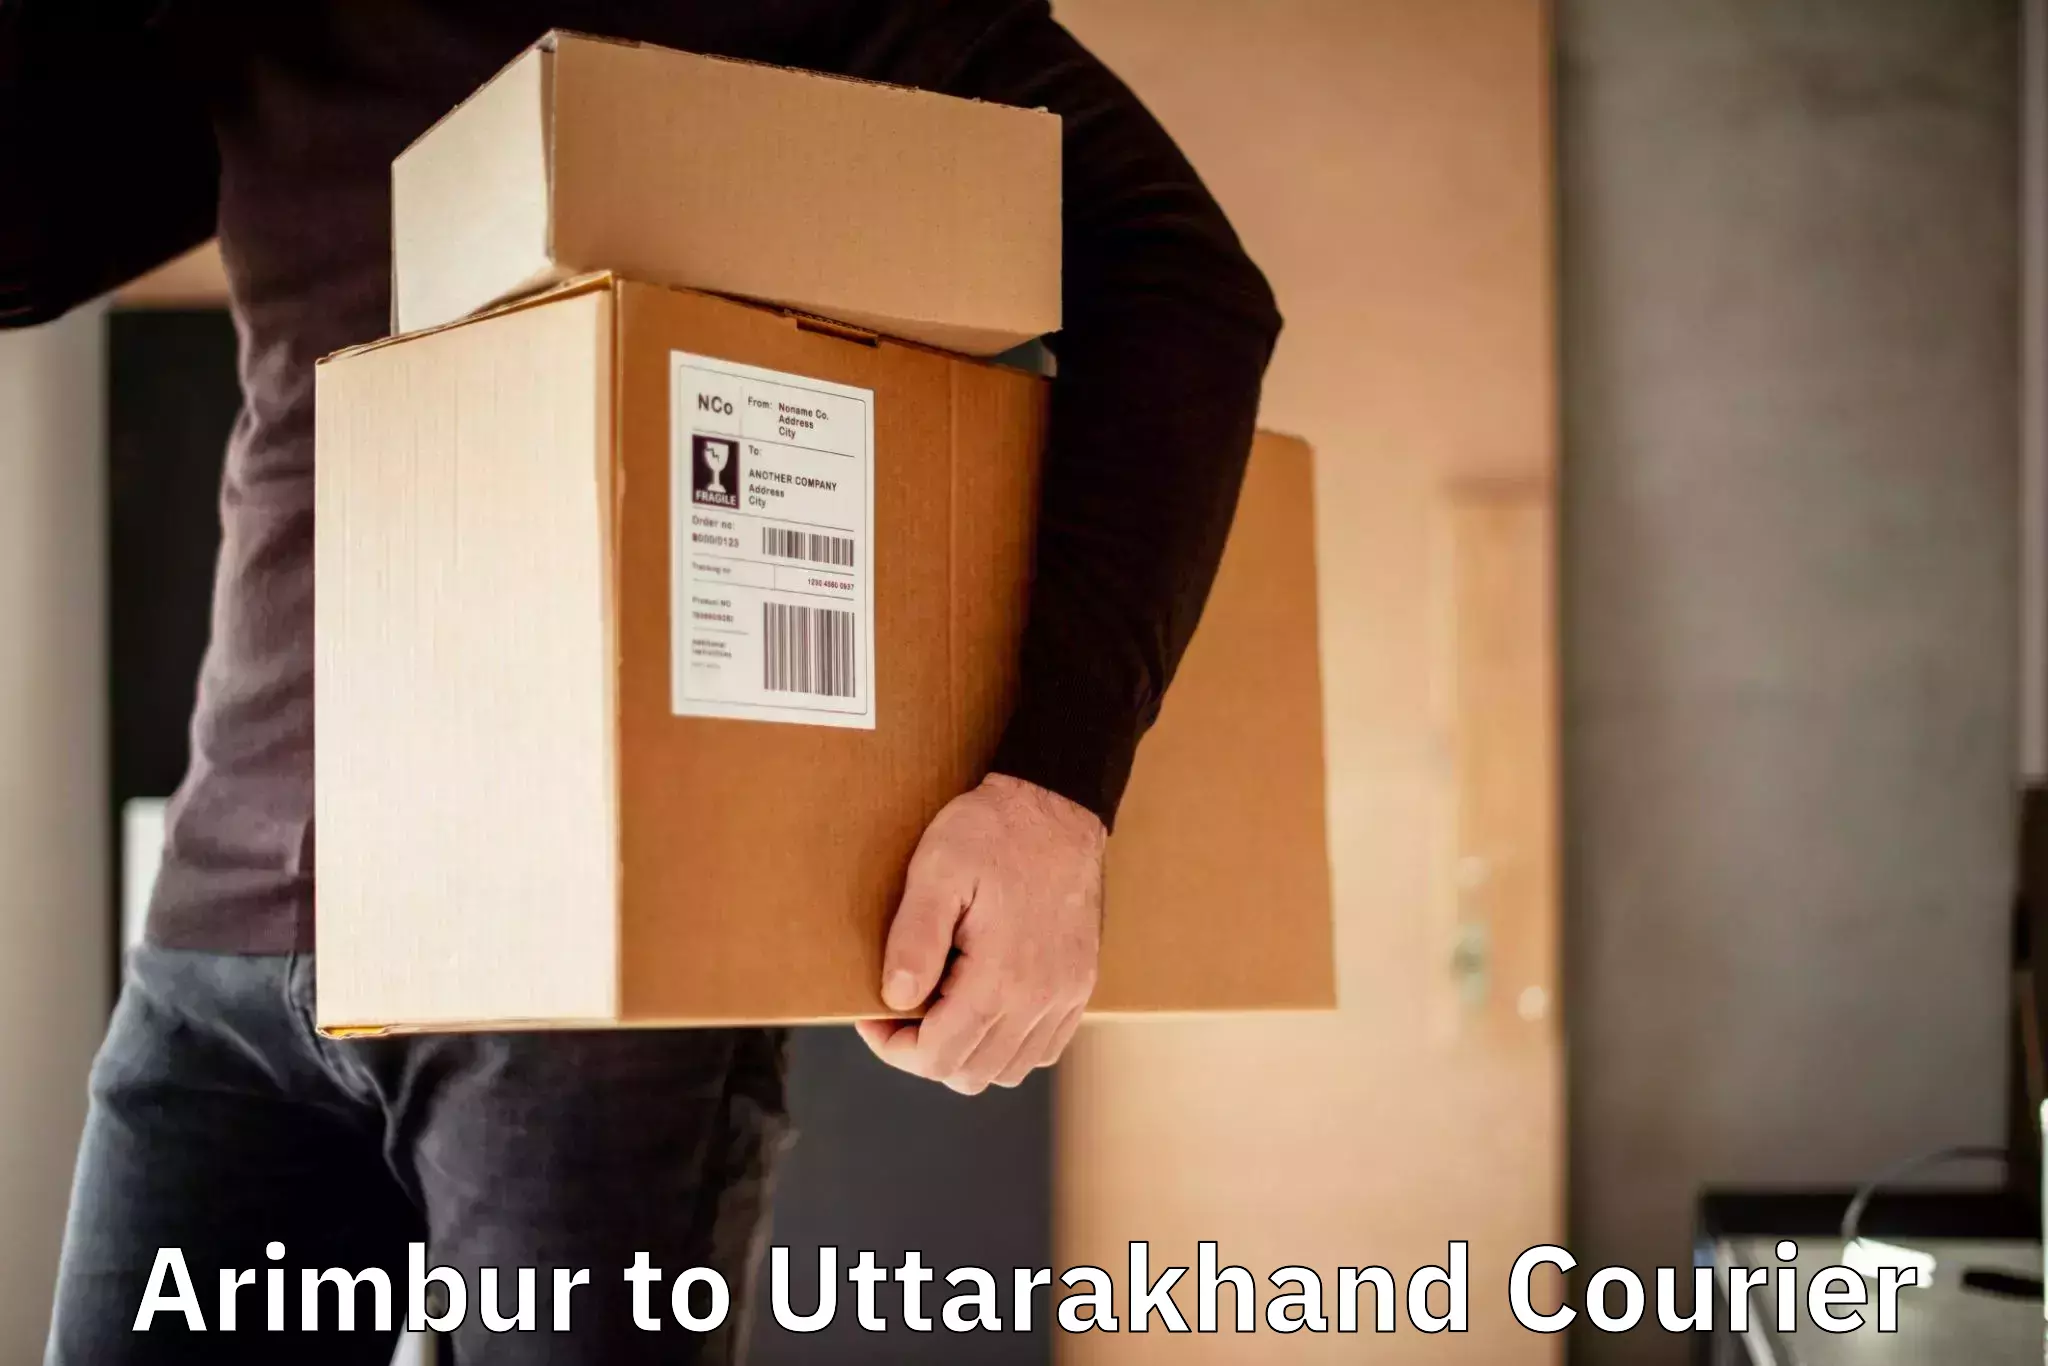 High-capacity parcel service Arimbur to Rudraprayag